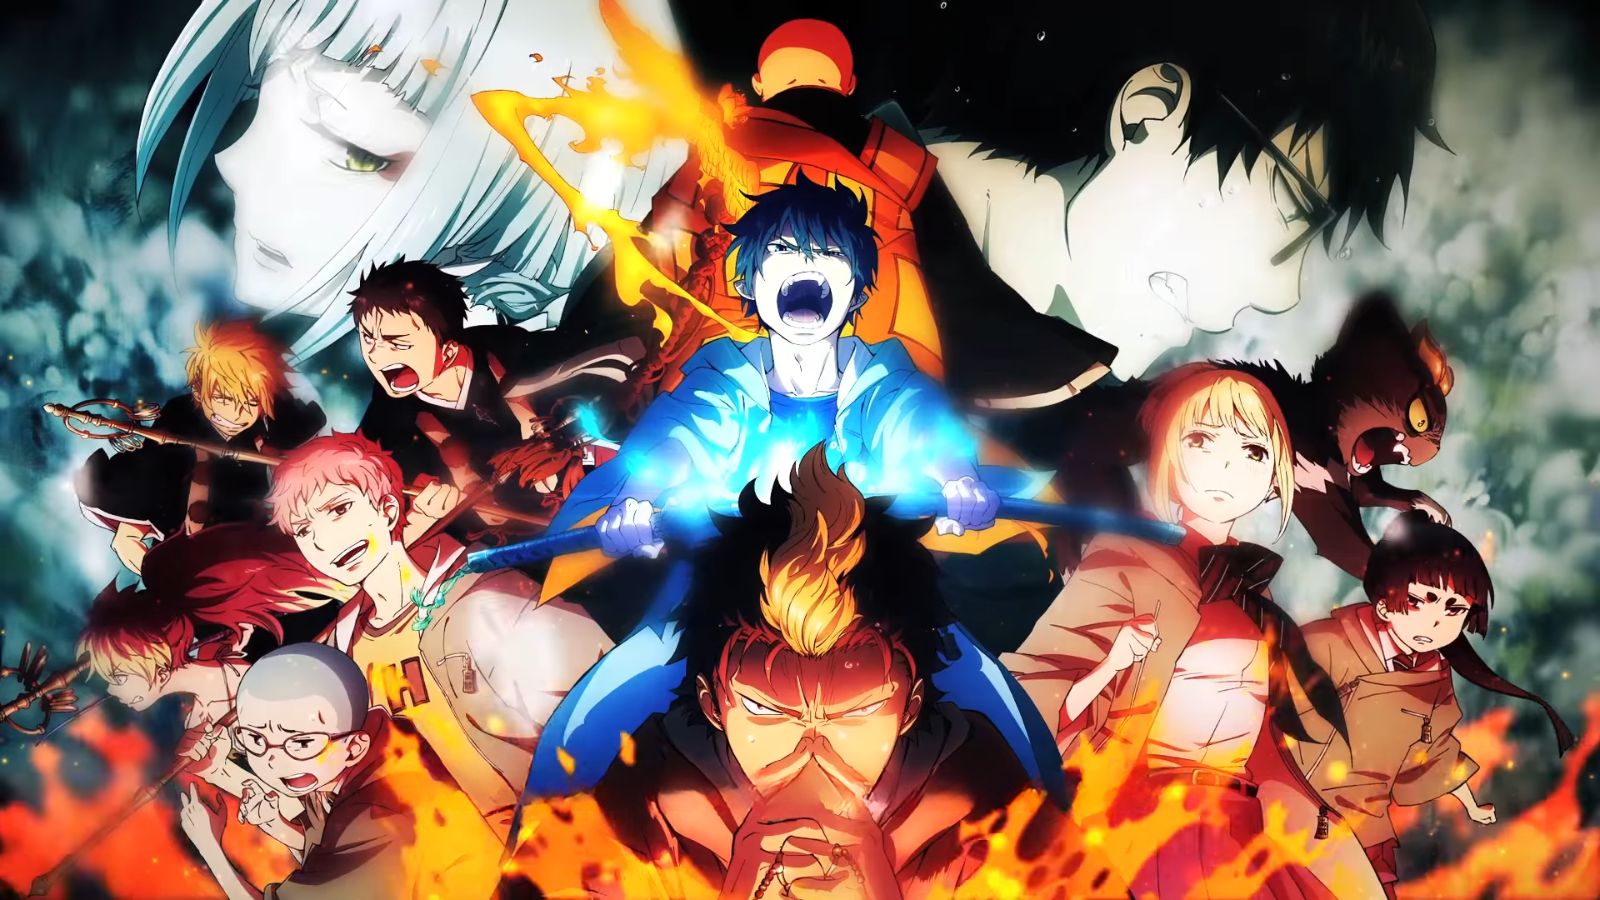 Blue Exorcist Manga Goes On Hiatus For 2 Months - Anime Explained